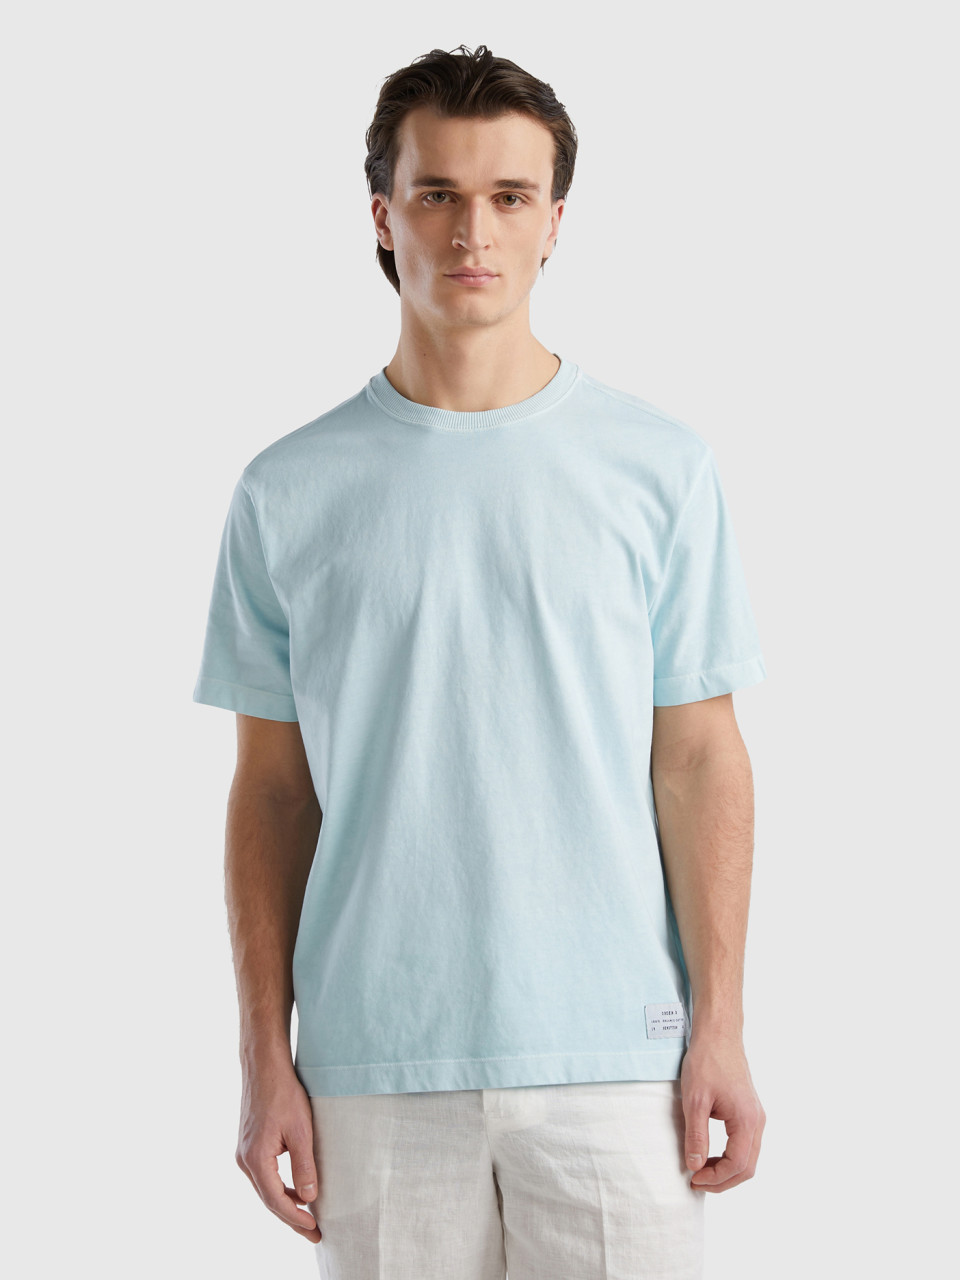 Benetton, Rundhals-t-shirt 100% Bio-baumwolle, Türkisblau, male